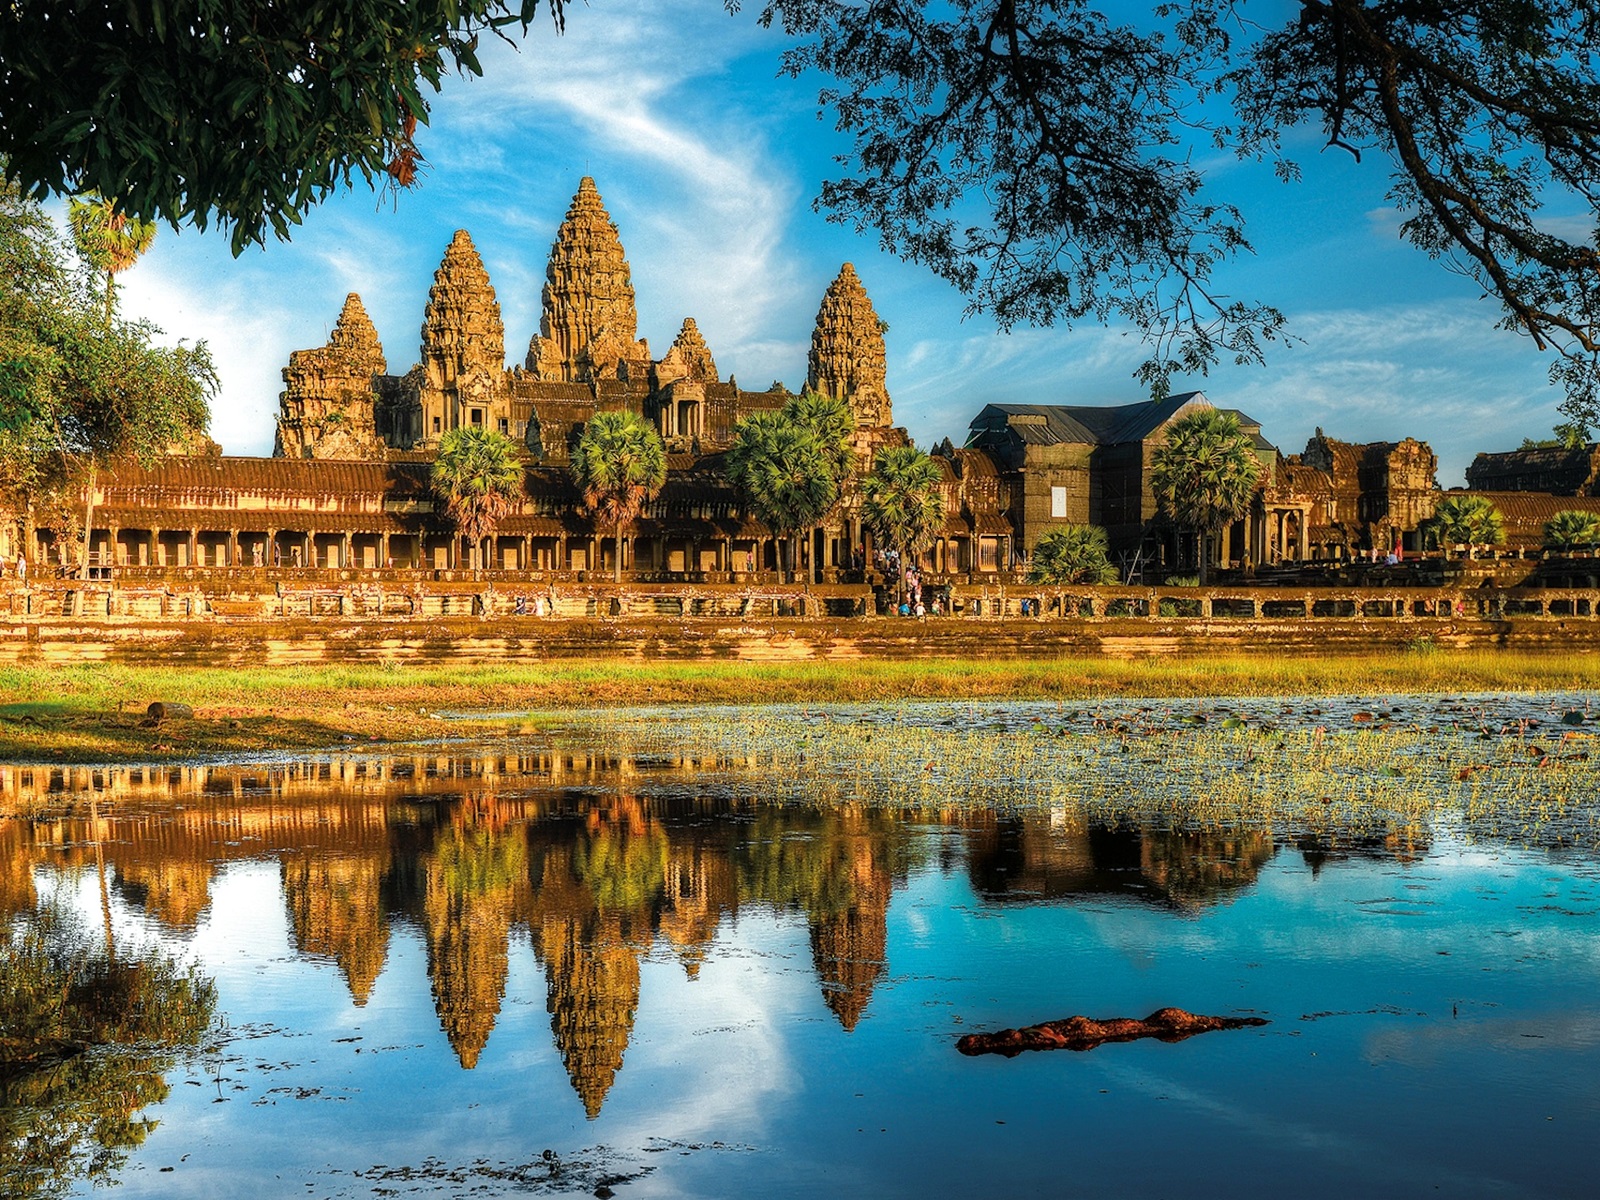 Cùng khám phá Angkor Wat - nơi lưu giữ những bí ẩn lịch sử 339930_Angkorlead2_4x3